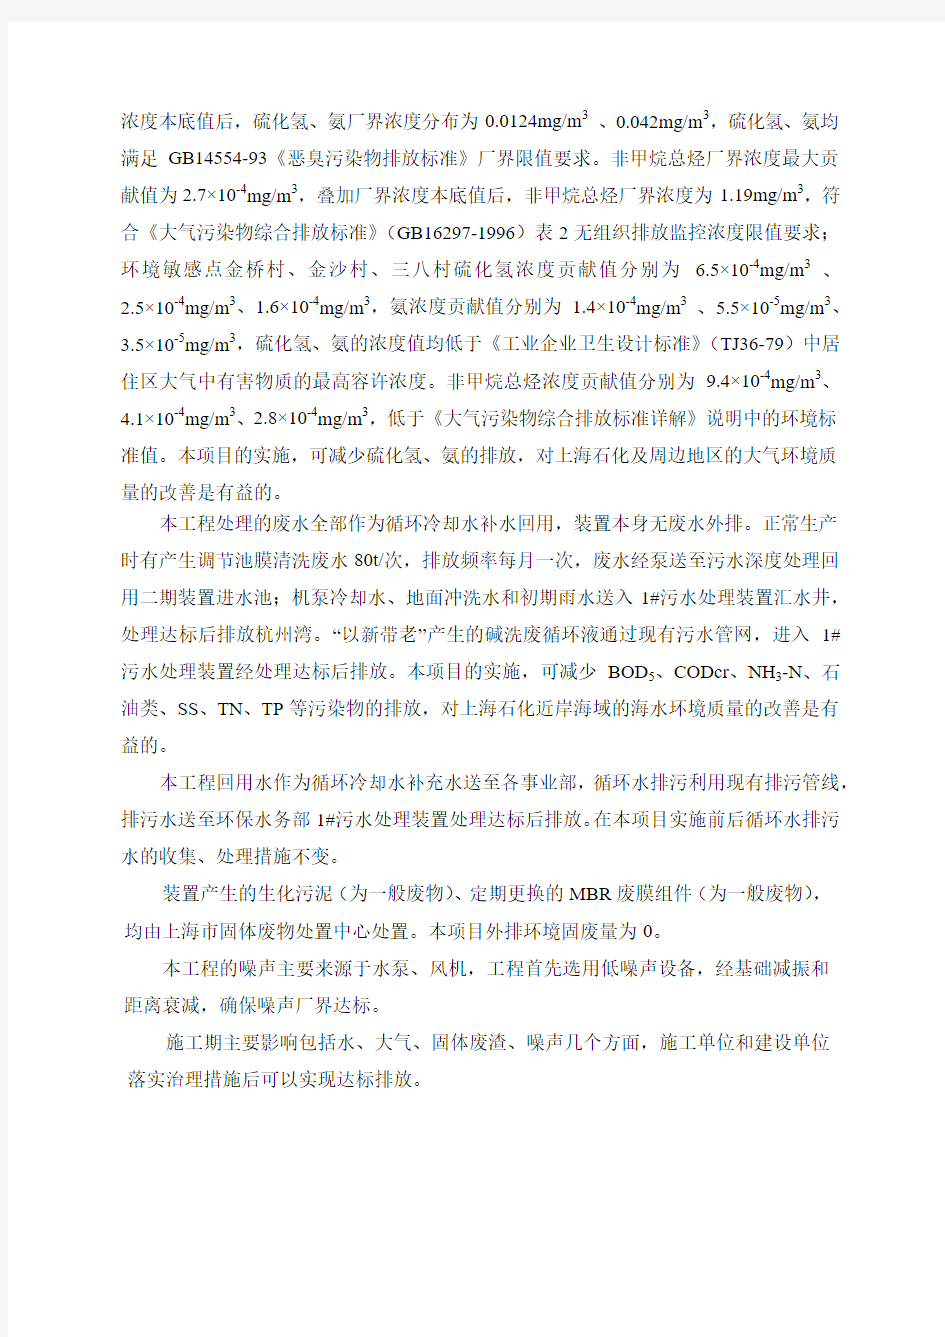 中国石化上海石油化工股份有限公司污水深度处理回-上海市环境保护局